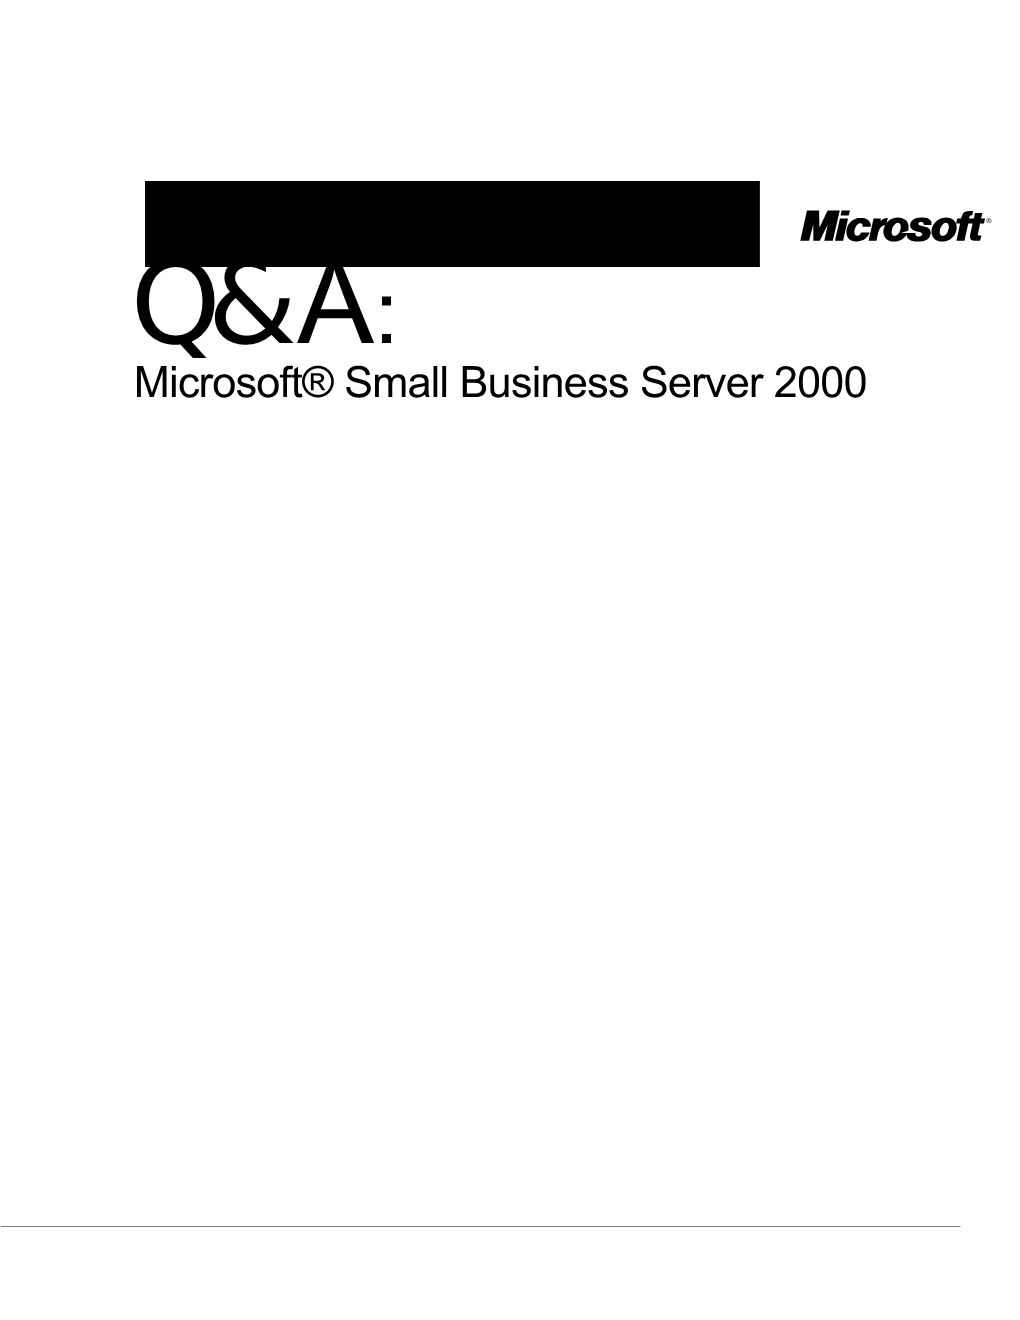 Small Business Server 2000 General FAQ